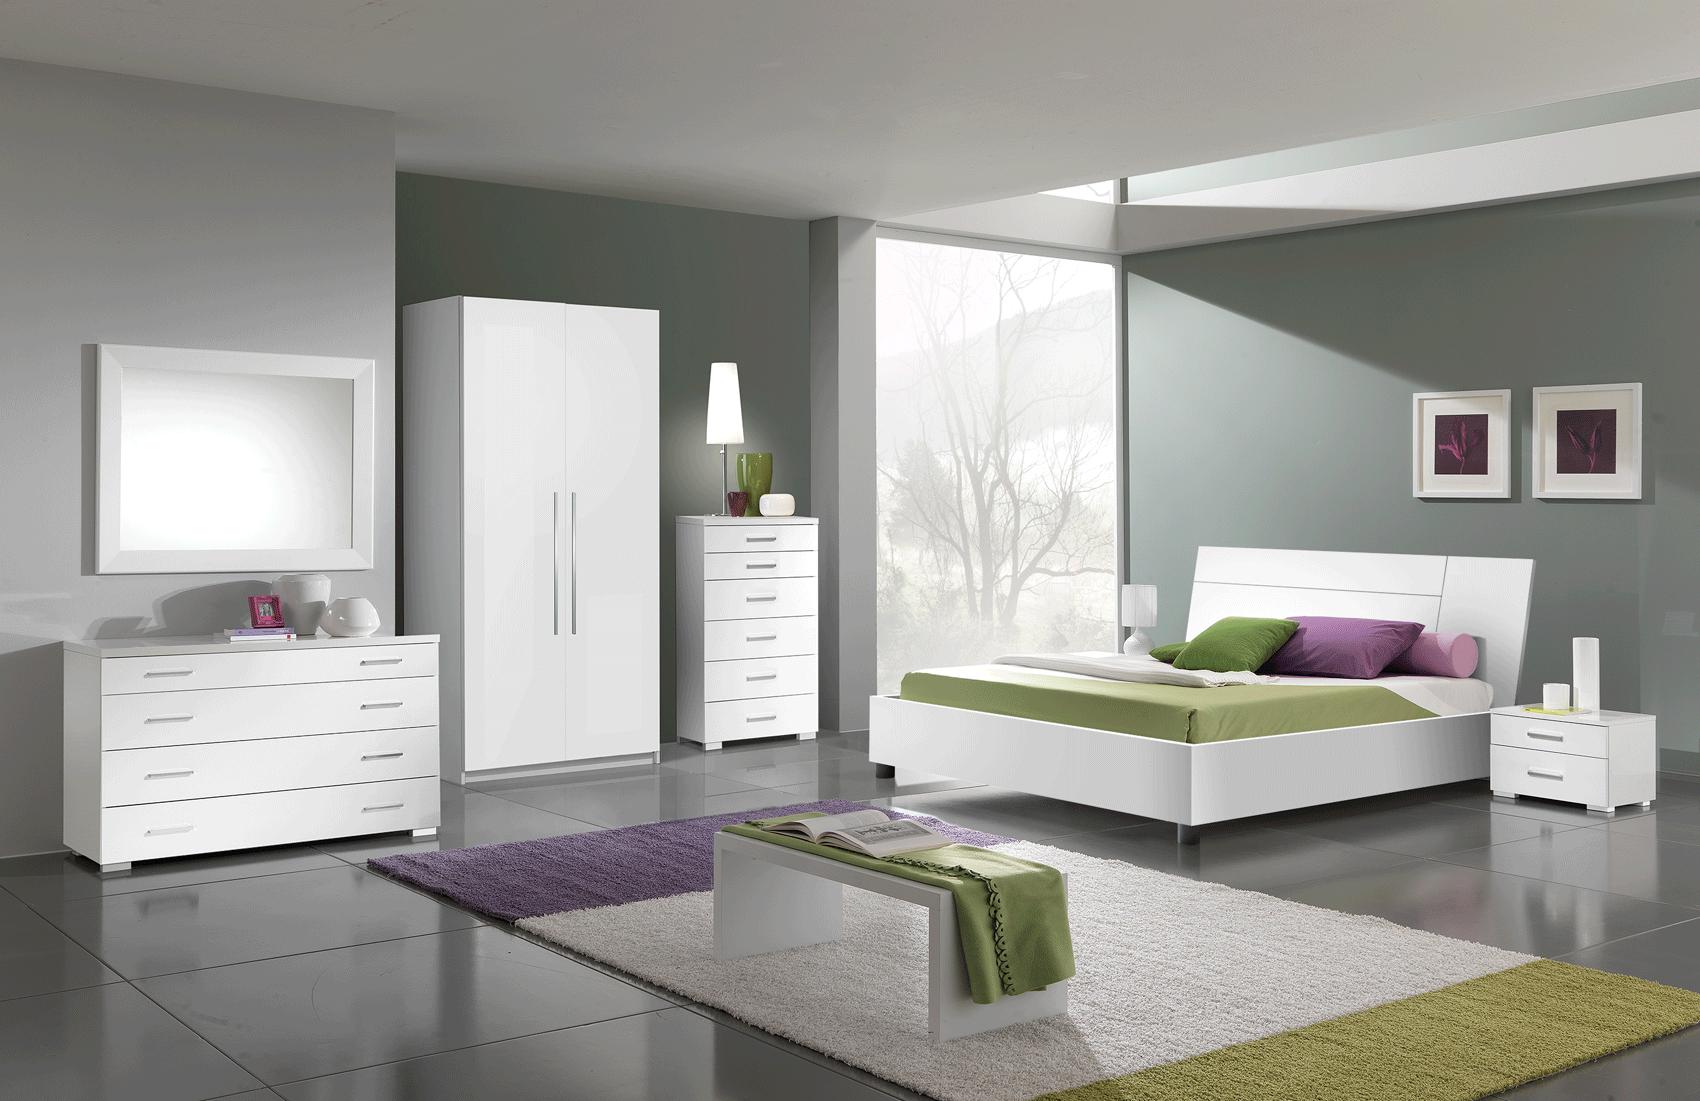 

    
MOMOSINGLEDRESSER-3PC White High Gloss Dresser, Chest & Wardrobe Set 3P MOMO ESF Modern MADE IN ITALY
